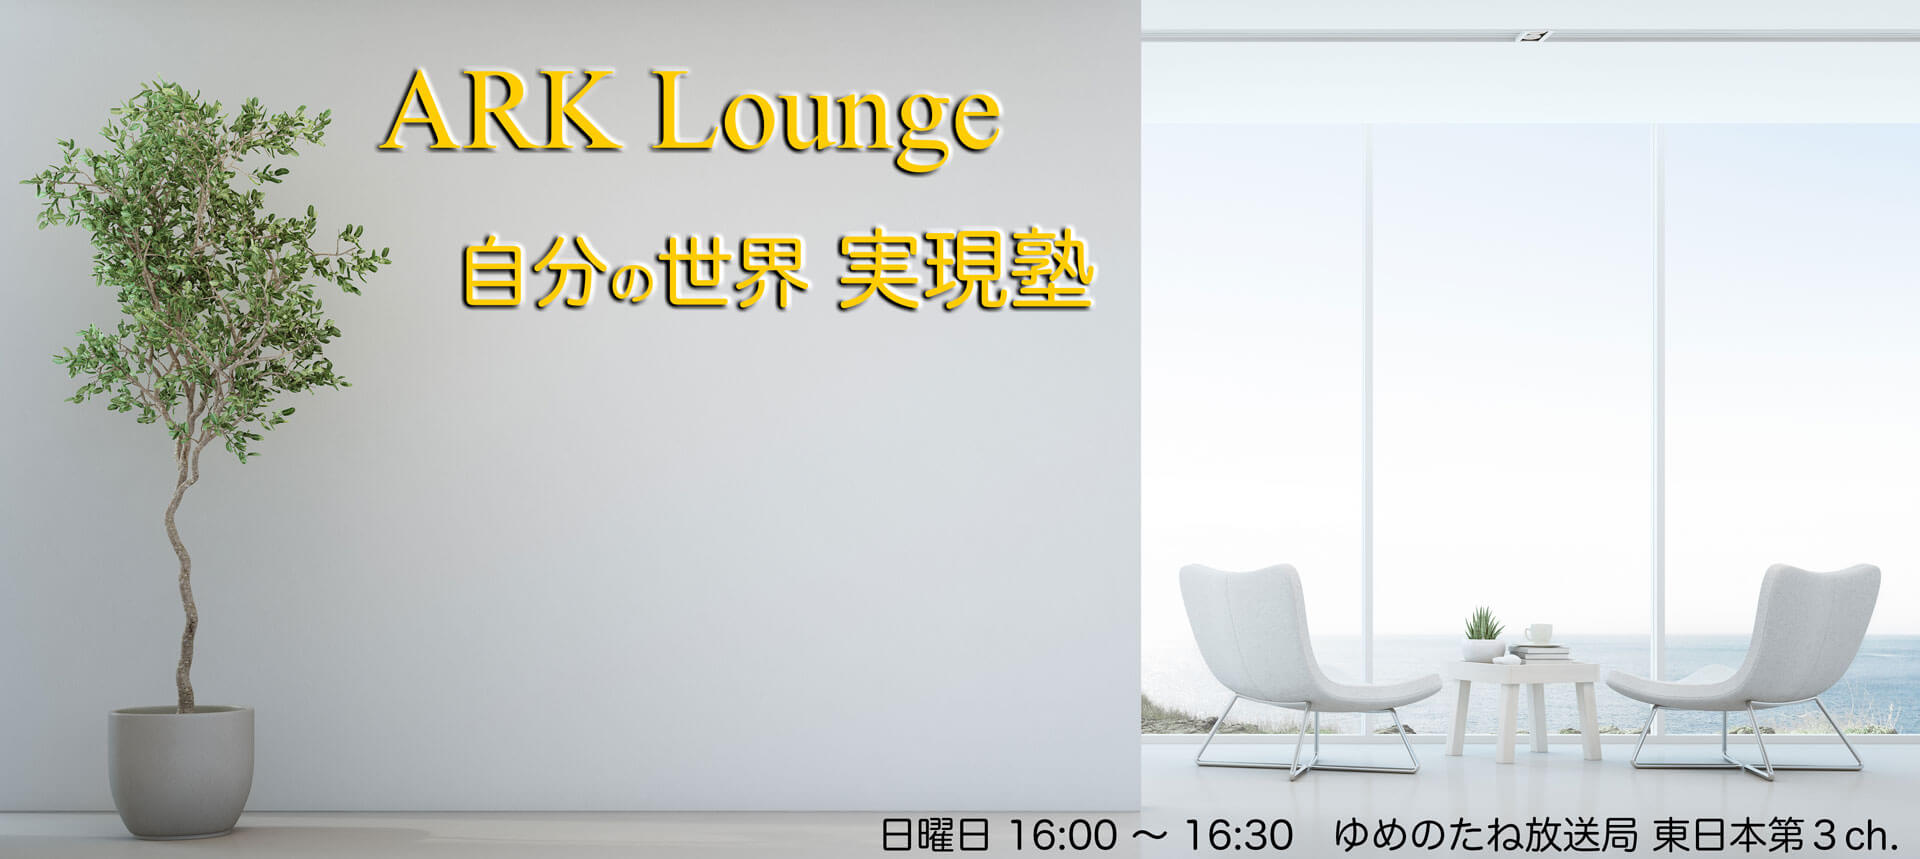 ARK Lounge Internet Radio